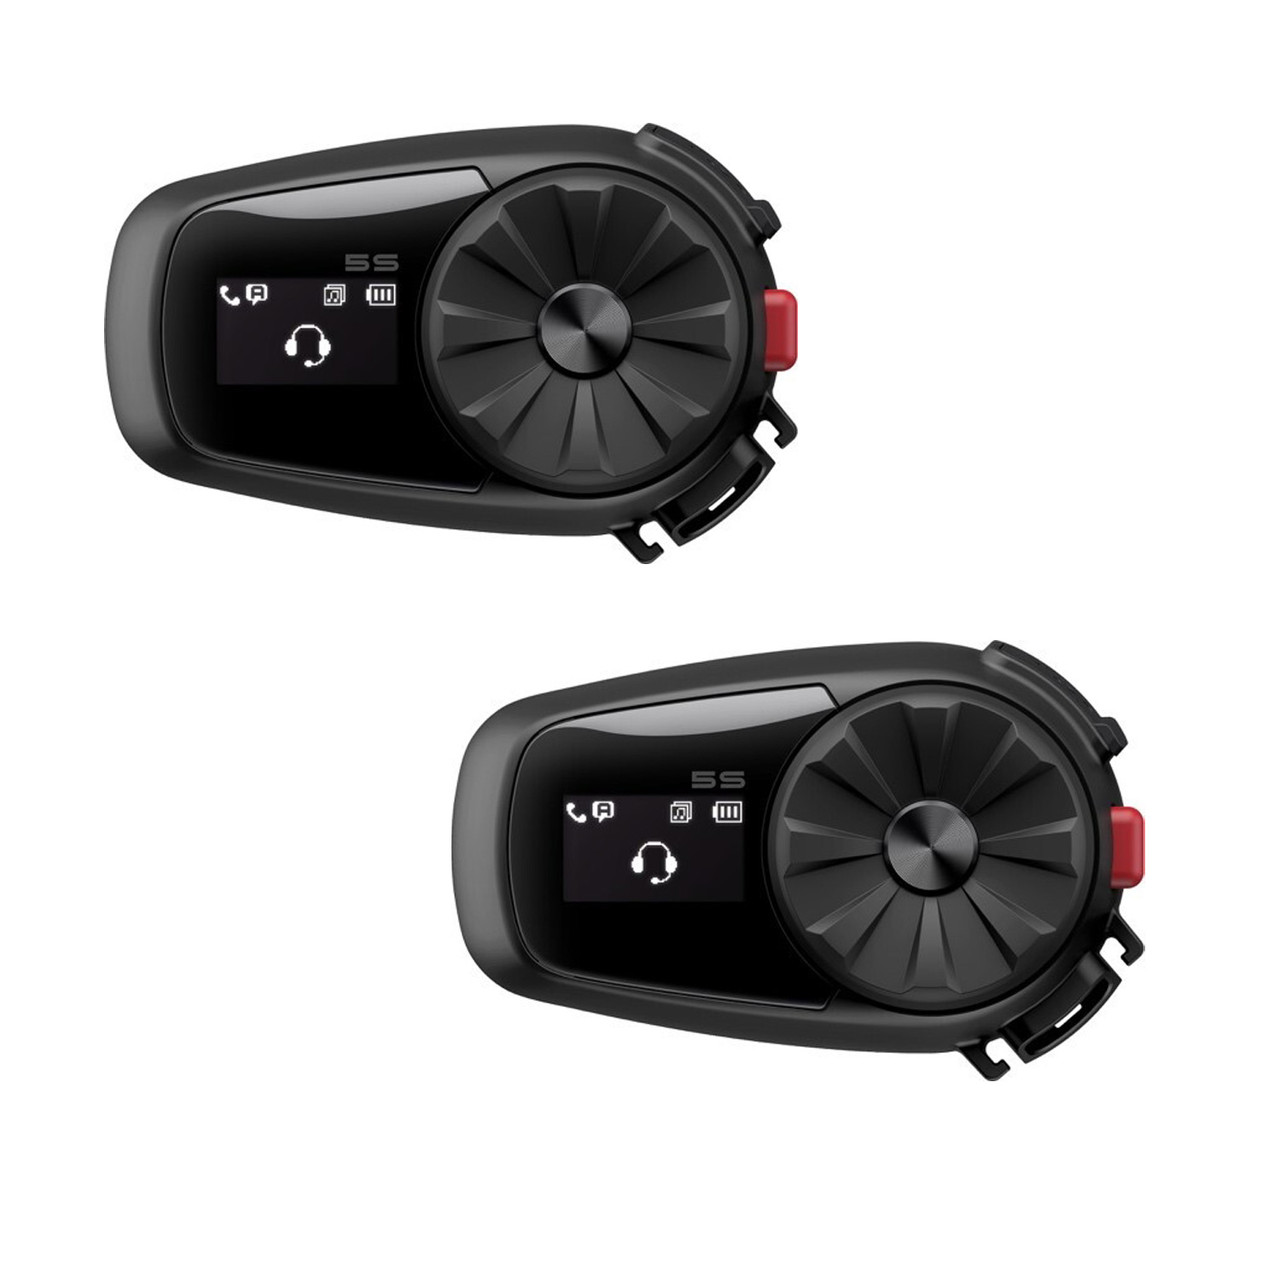 Sena 10S Bluetooth Headset Review at SpeedAddicts.com 